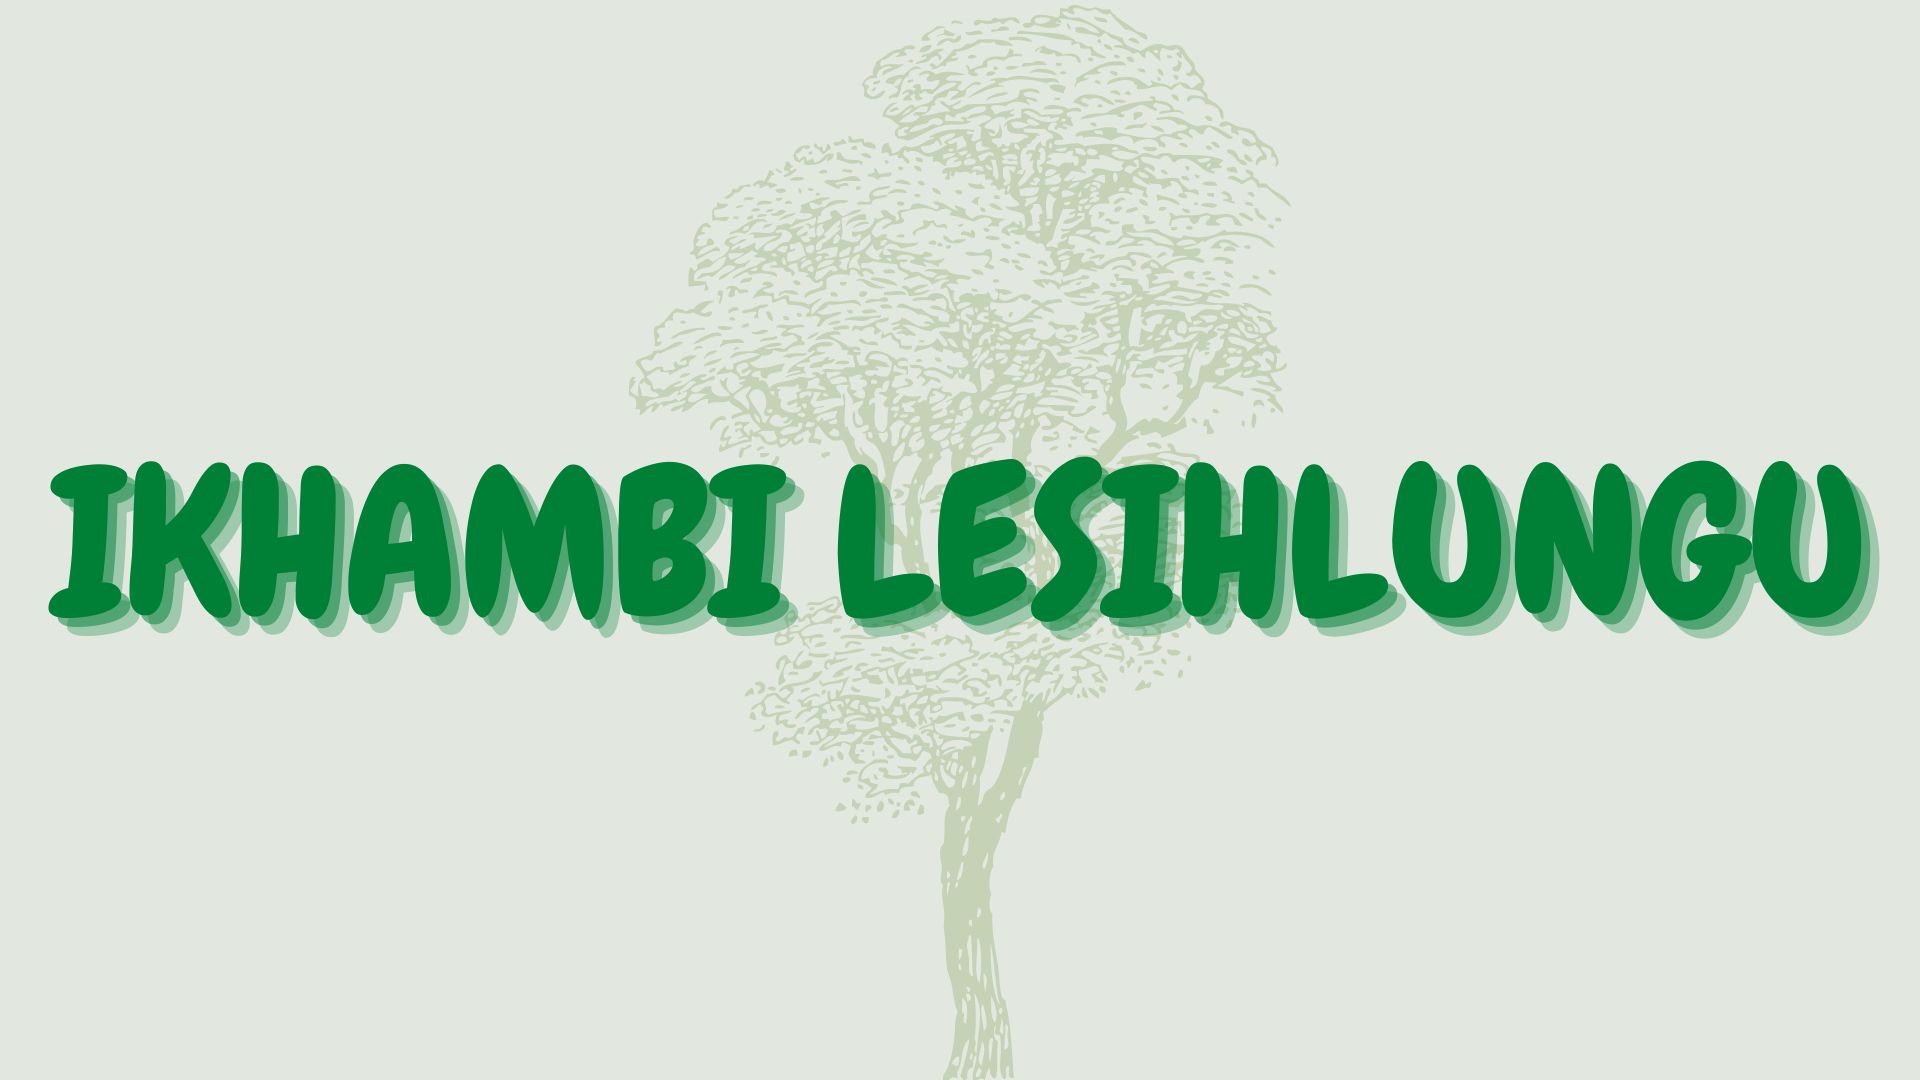 You are currently viewing Ikhambi lesihlungu